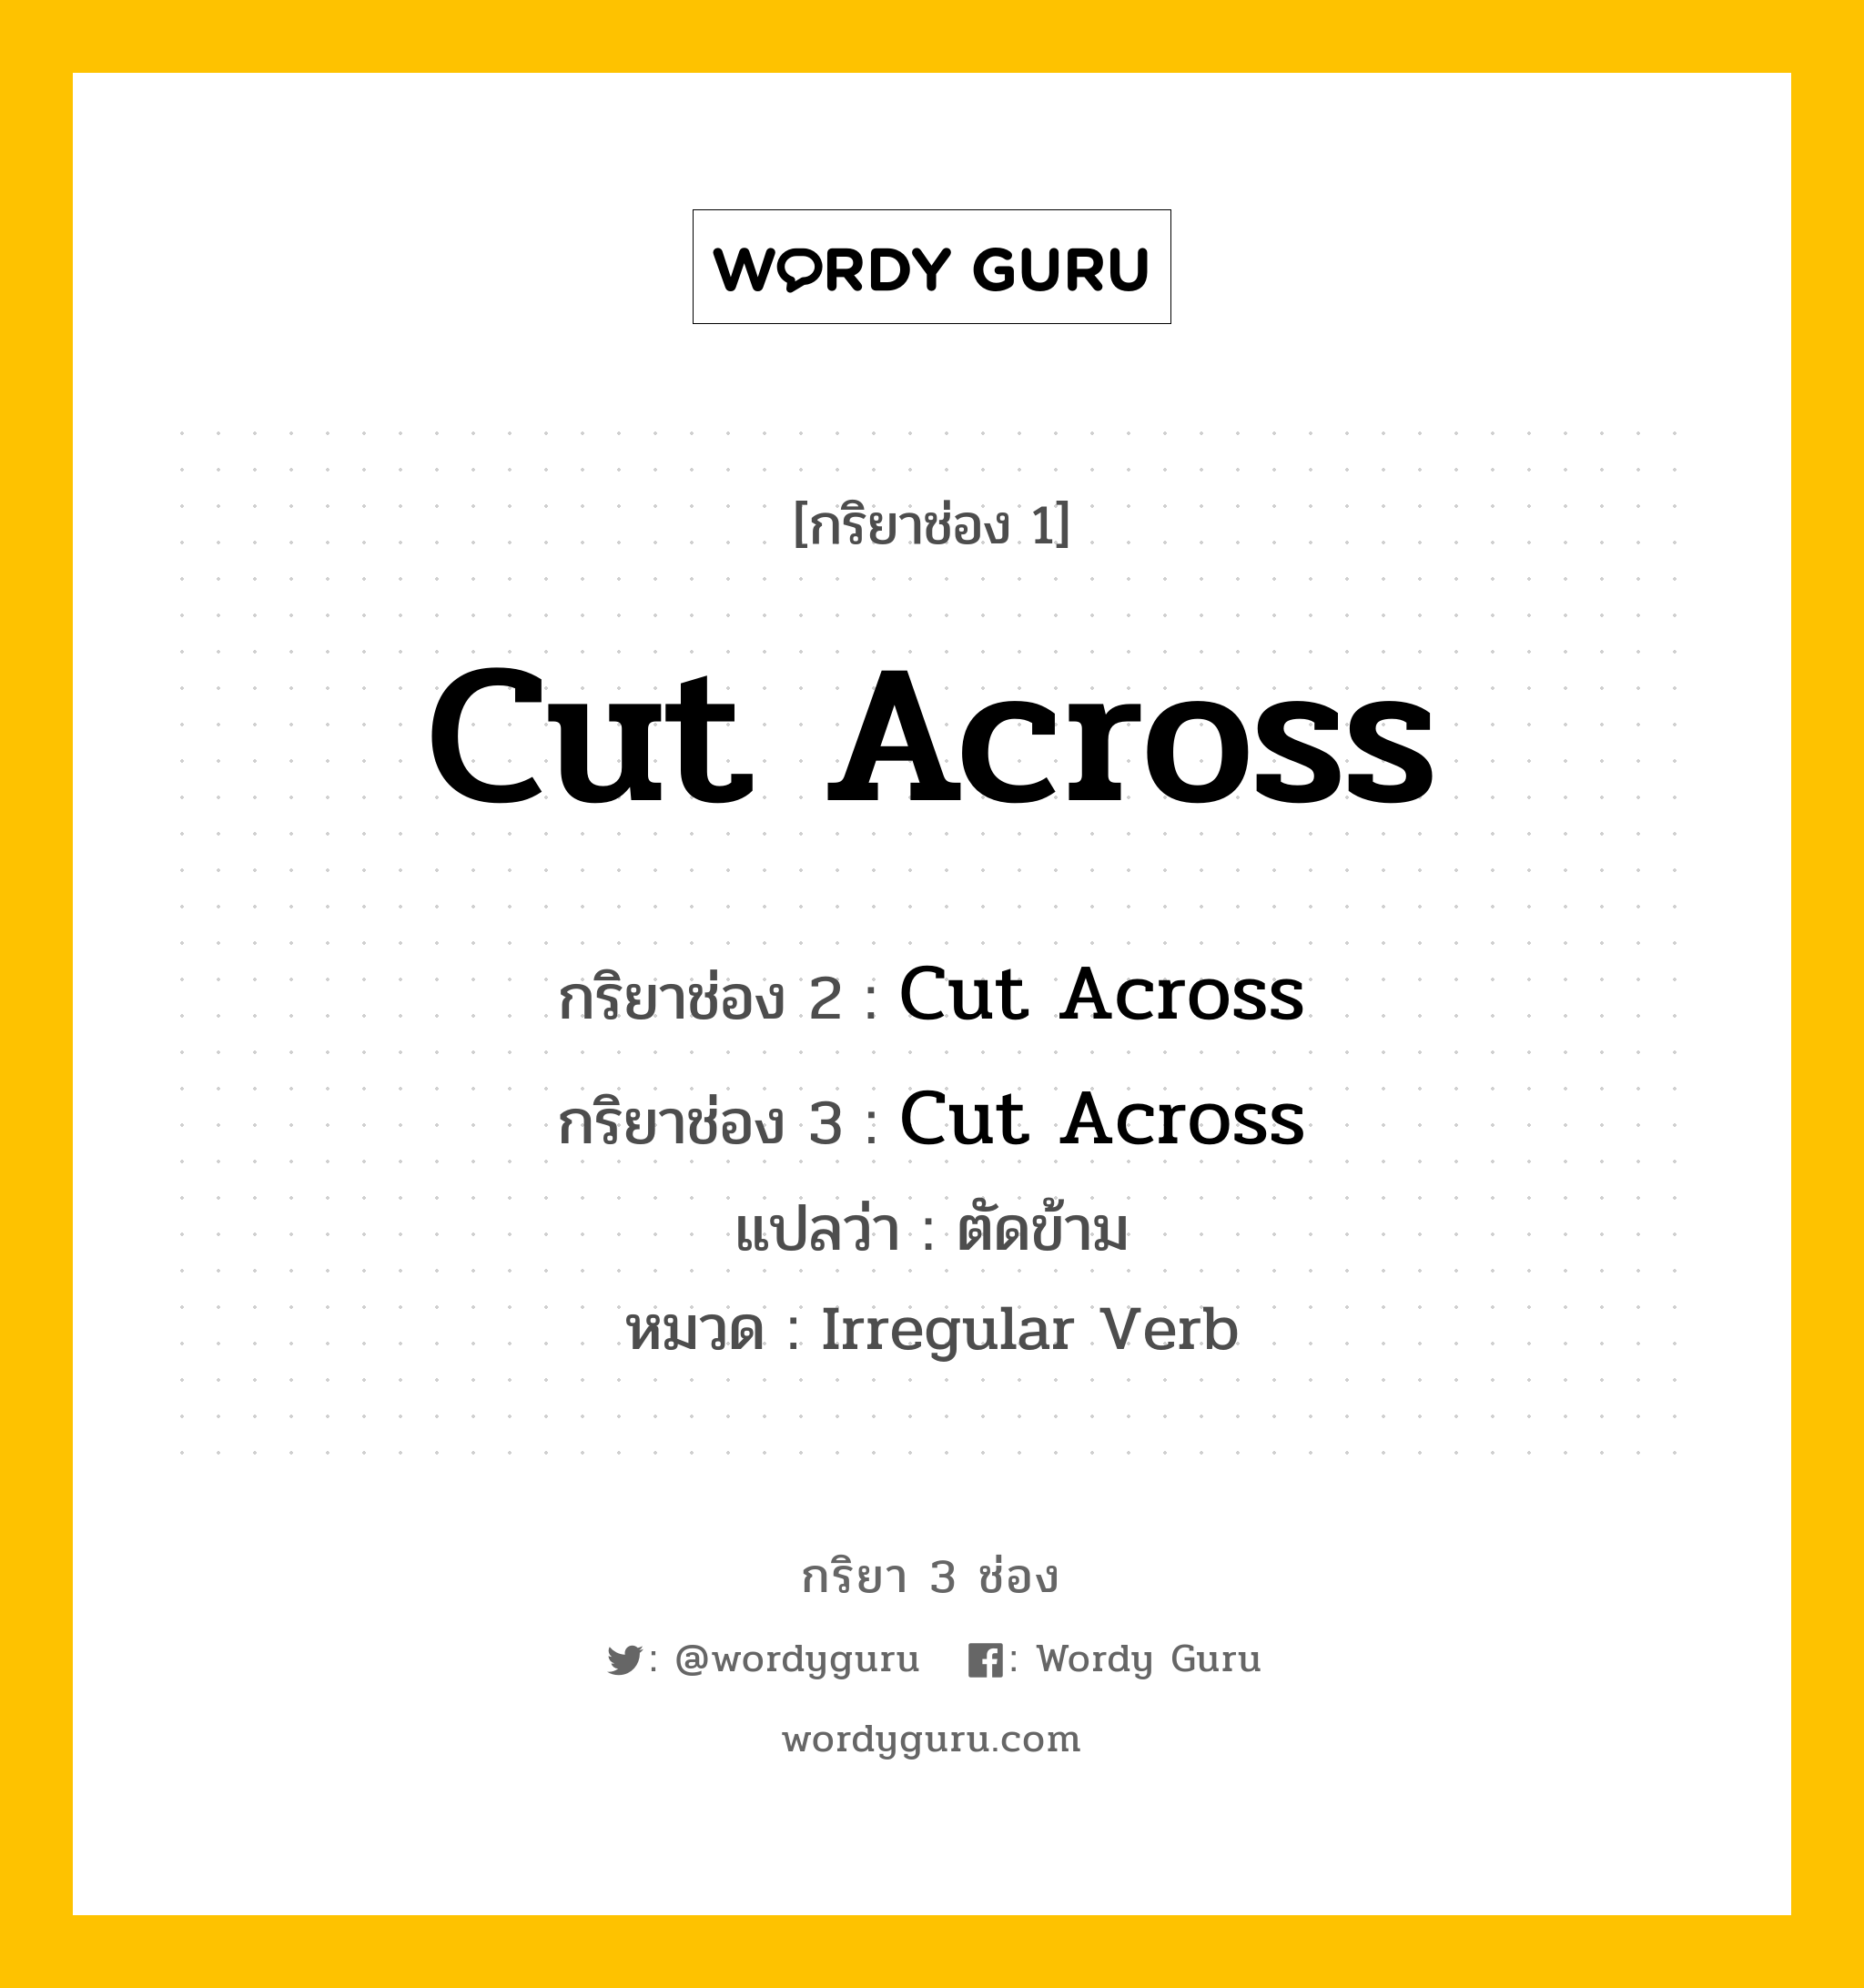 กริยา 3 ช่อง: Cut Across ช่อง 2 Cut Across ช่อง 3 คืออะไร, กริยาช่อง 1 Cut Across กริยาช่อง 2 Cut Across กริยาช่อง 3 Cut Across แปลว่า ตัดข้าม หมวด Irregular Verb หมวด Irregular Verb